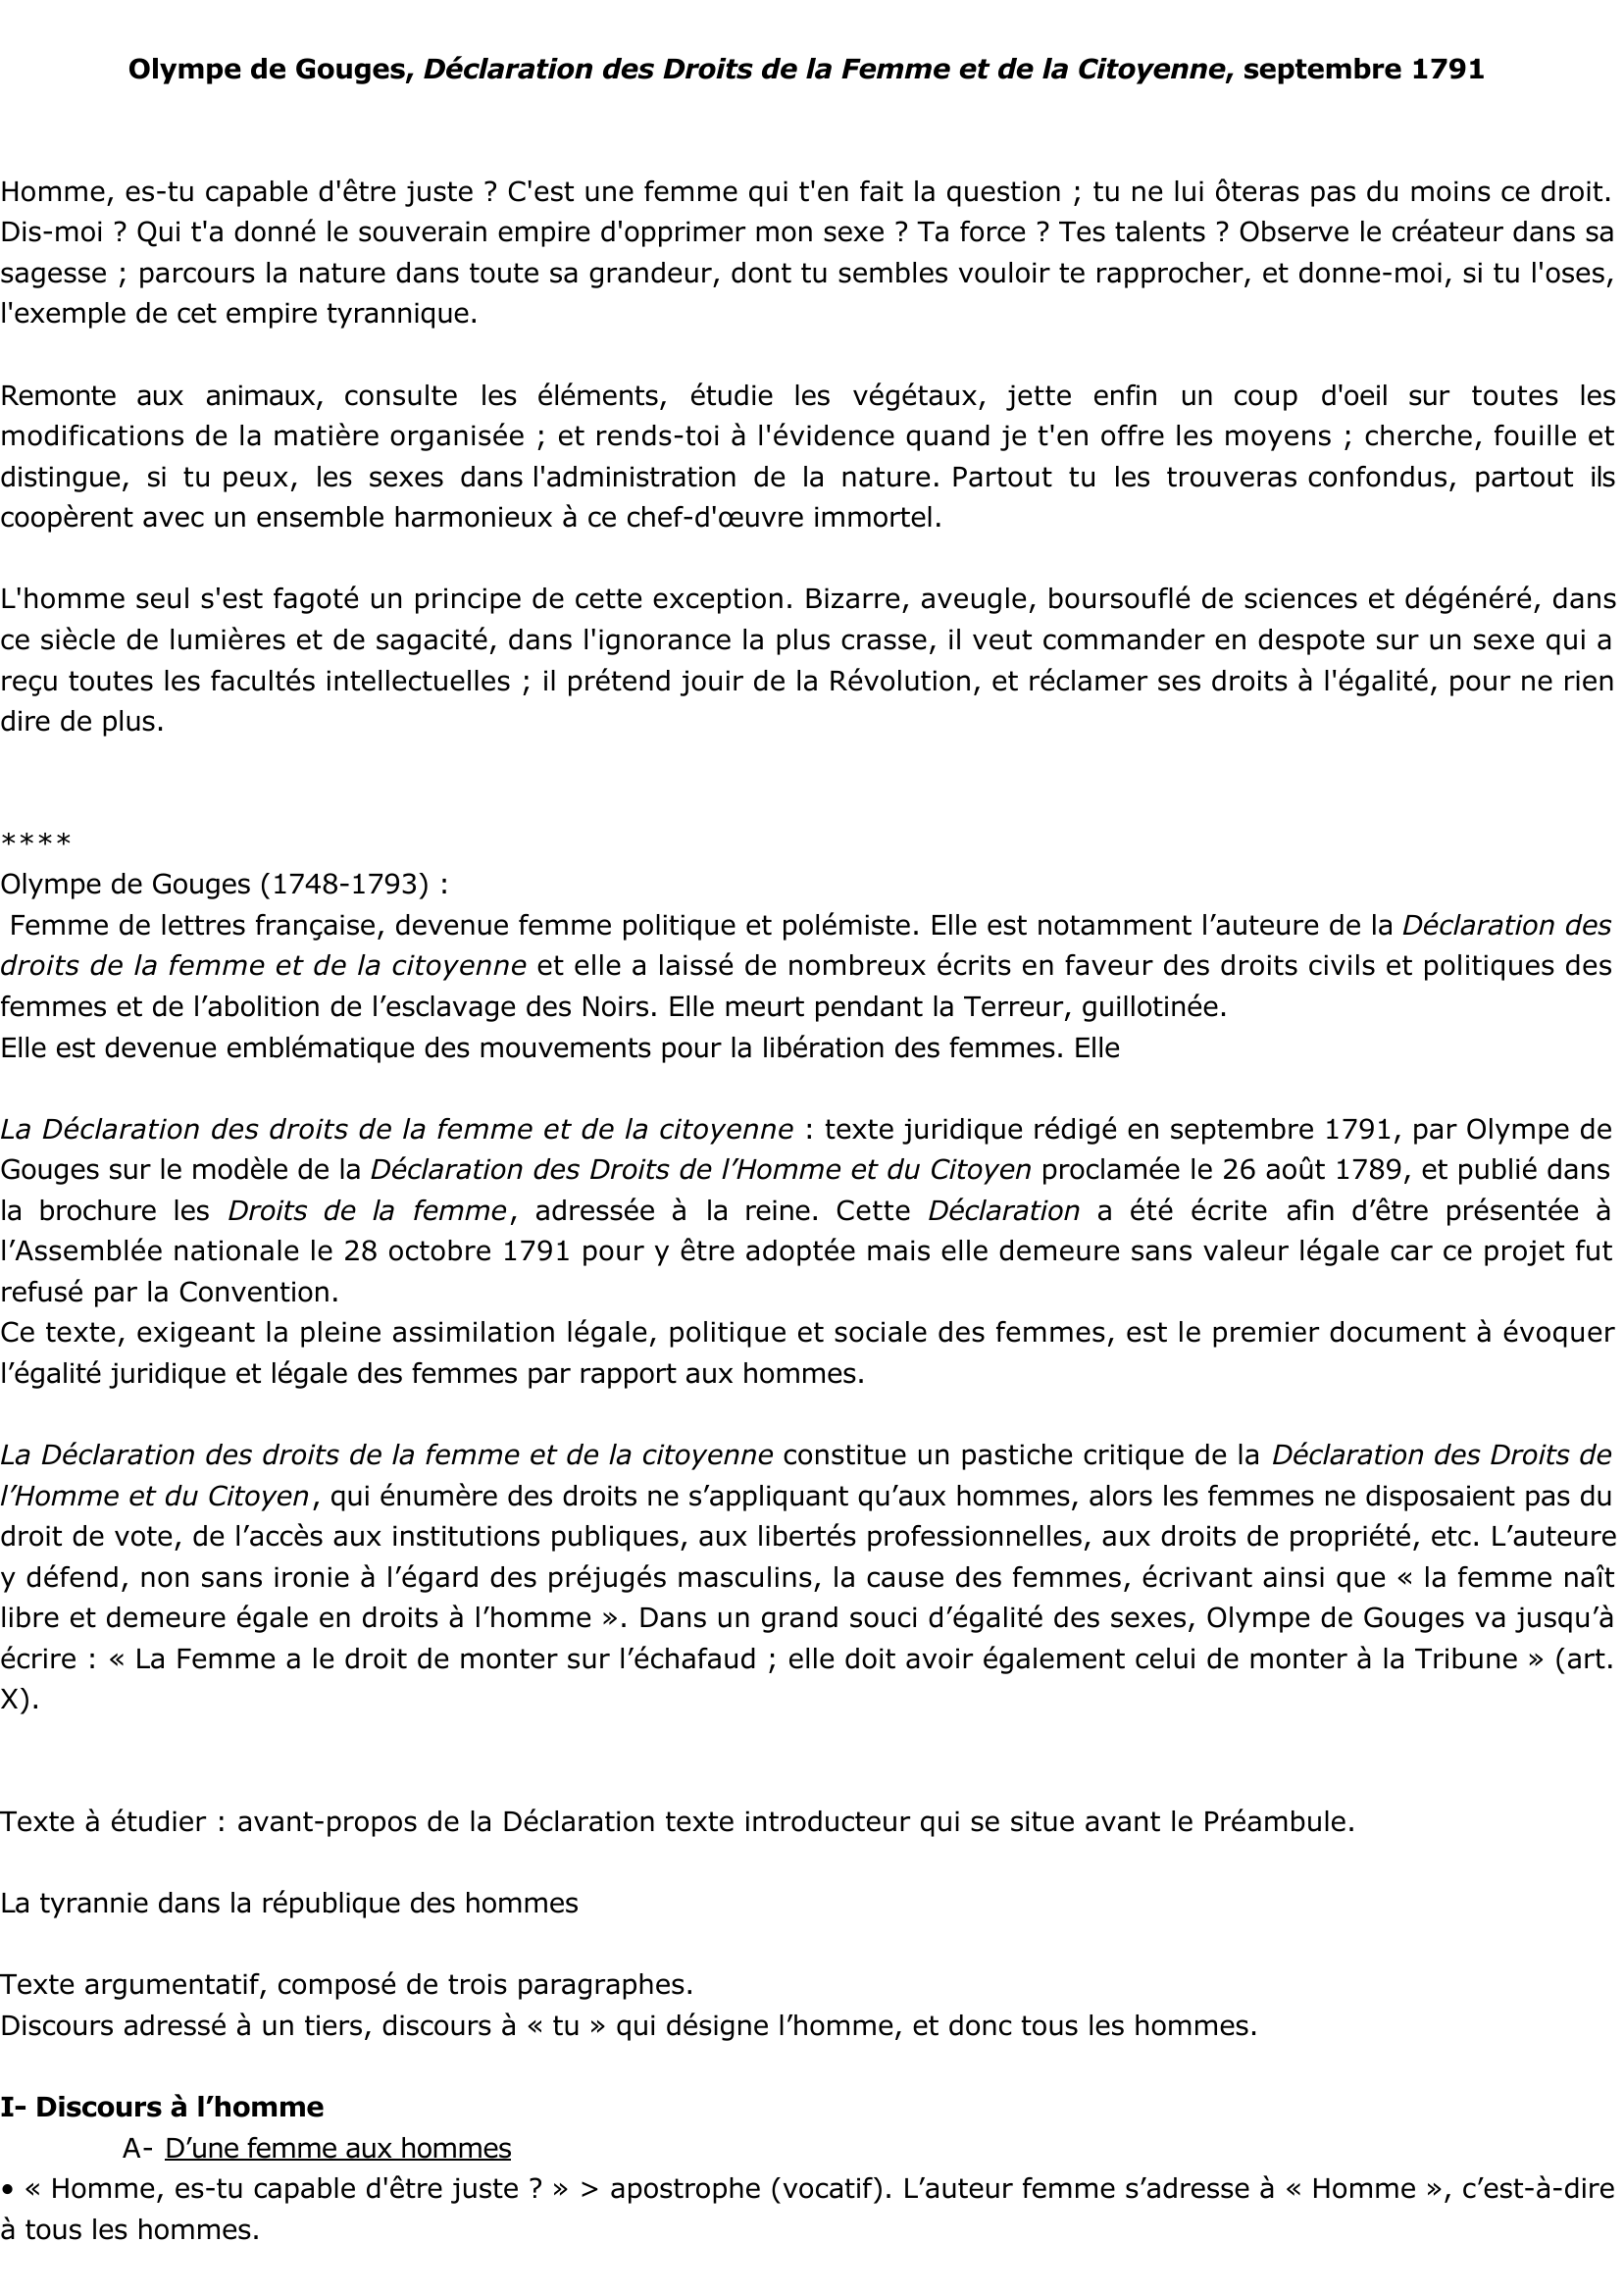 Prévisualisation du document Olympe de Gouges, Déclaration des Droits de la Femme et de la Citoyenne.